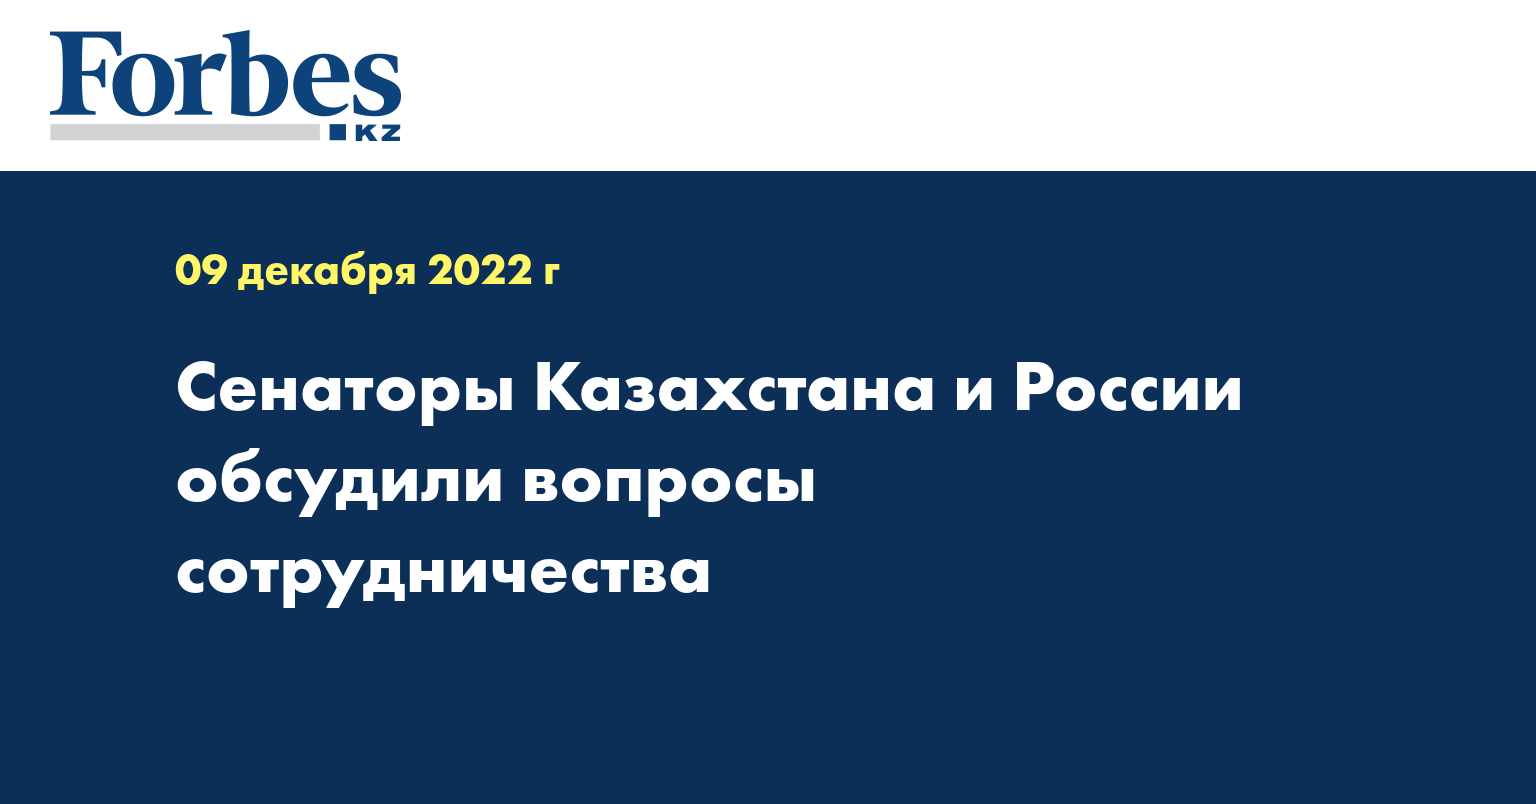 Сенаторы Казахстана и России обсудили вопросы сотрудничества